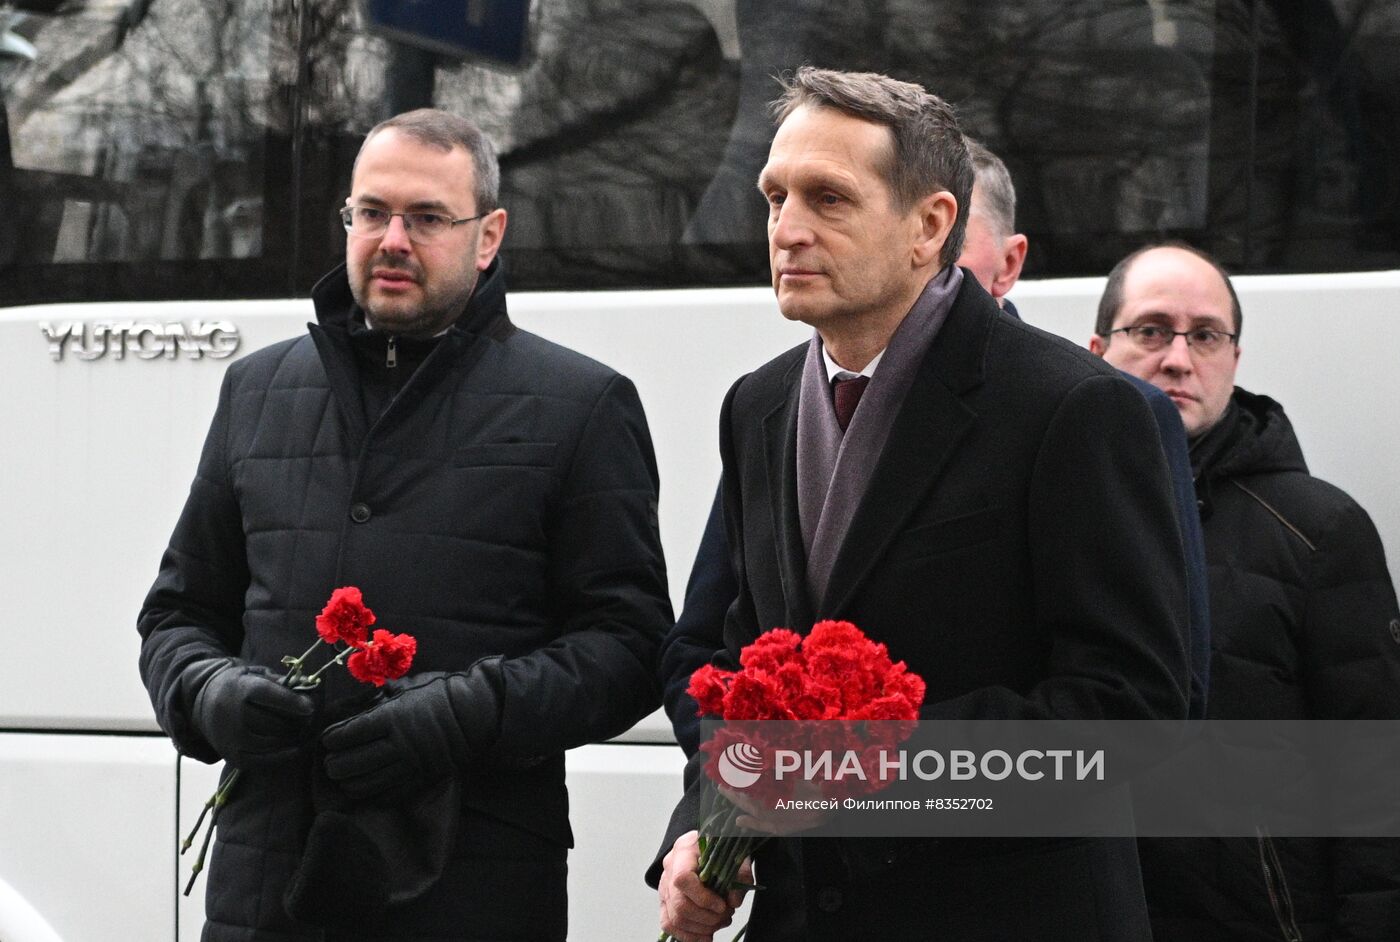 Церемония открытия мемориальной доски советским разведчикам Моррису и Леонтине Коэн